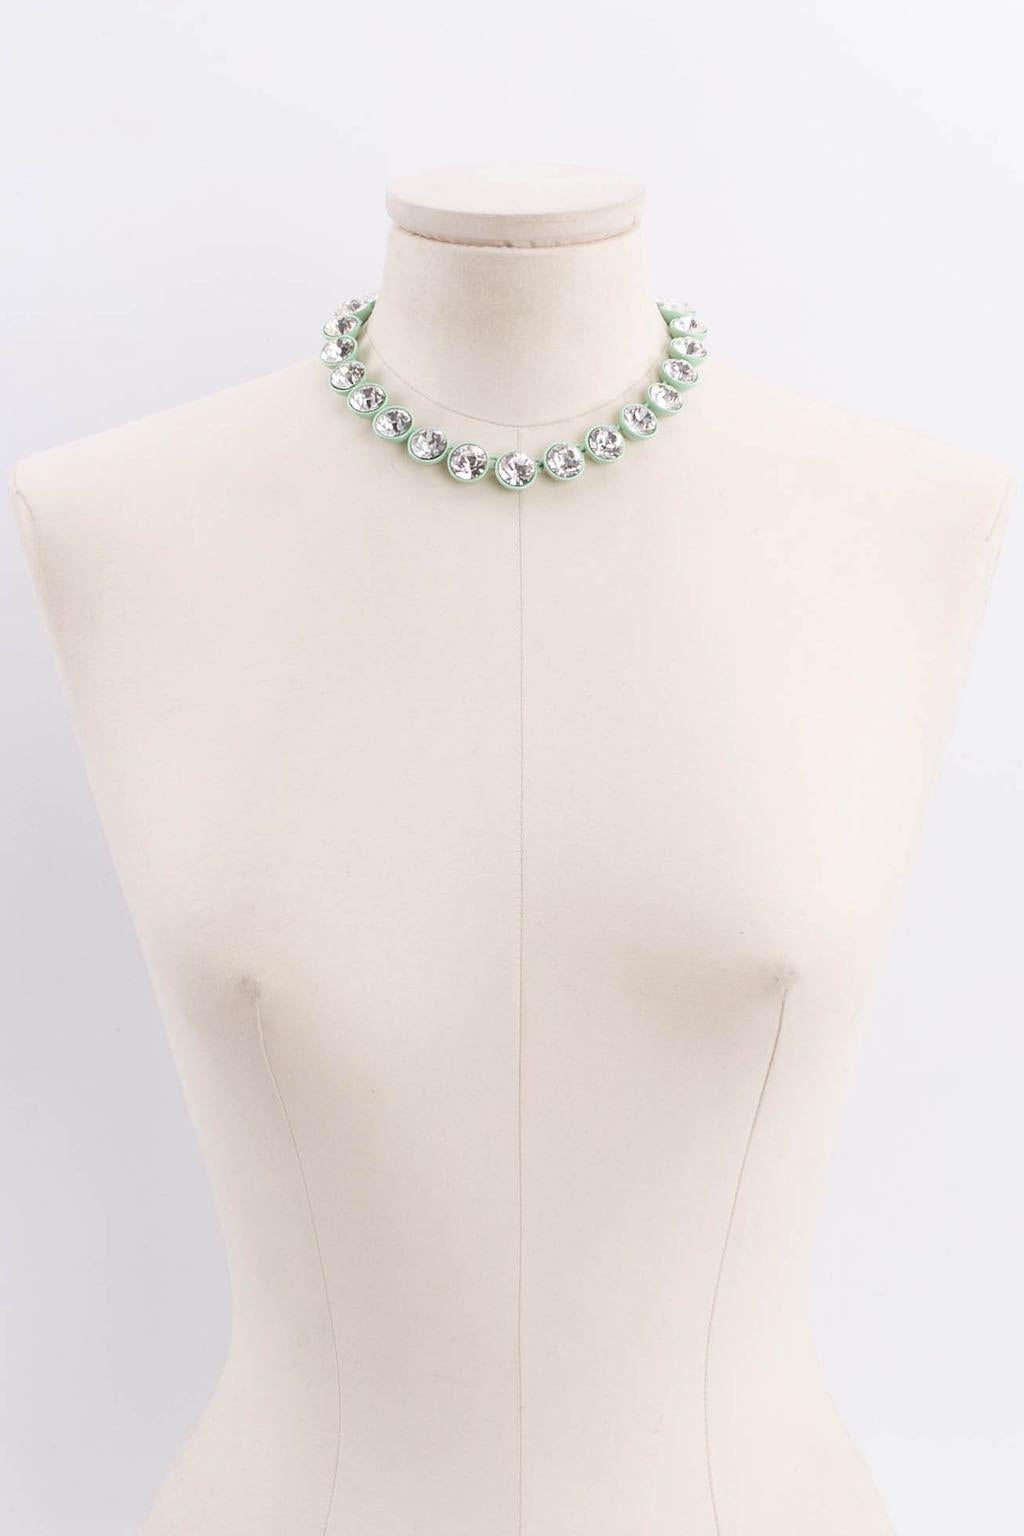 Balenciaga Rhinestones Necklace For Sale 1